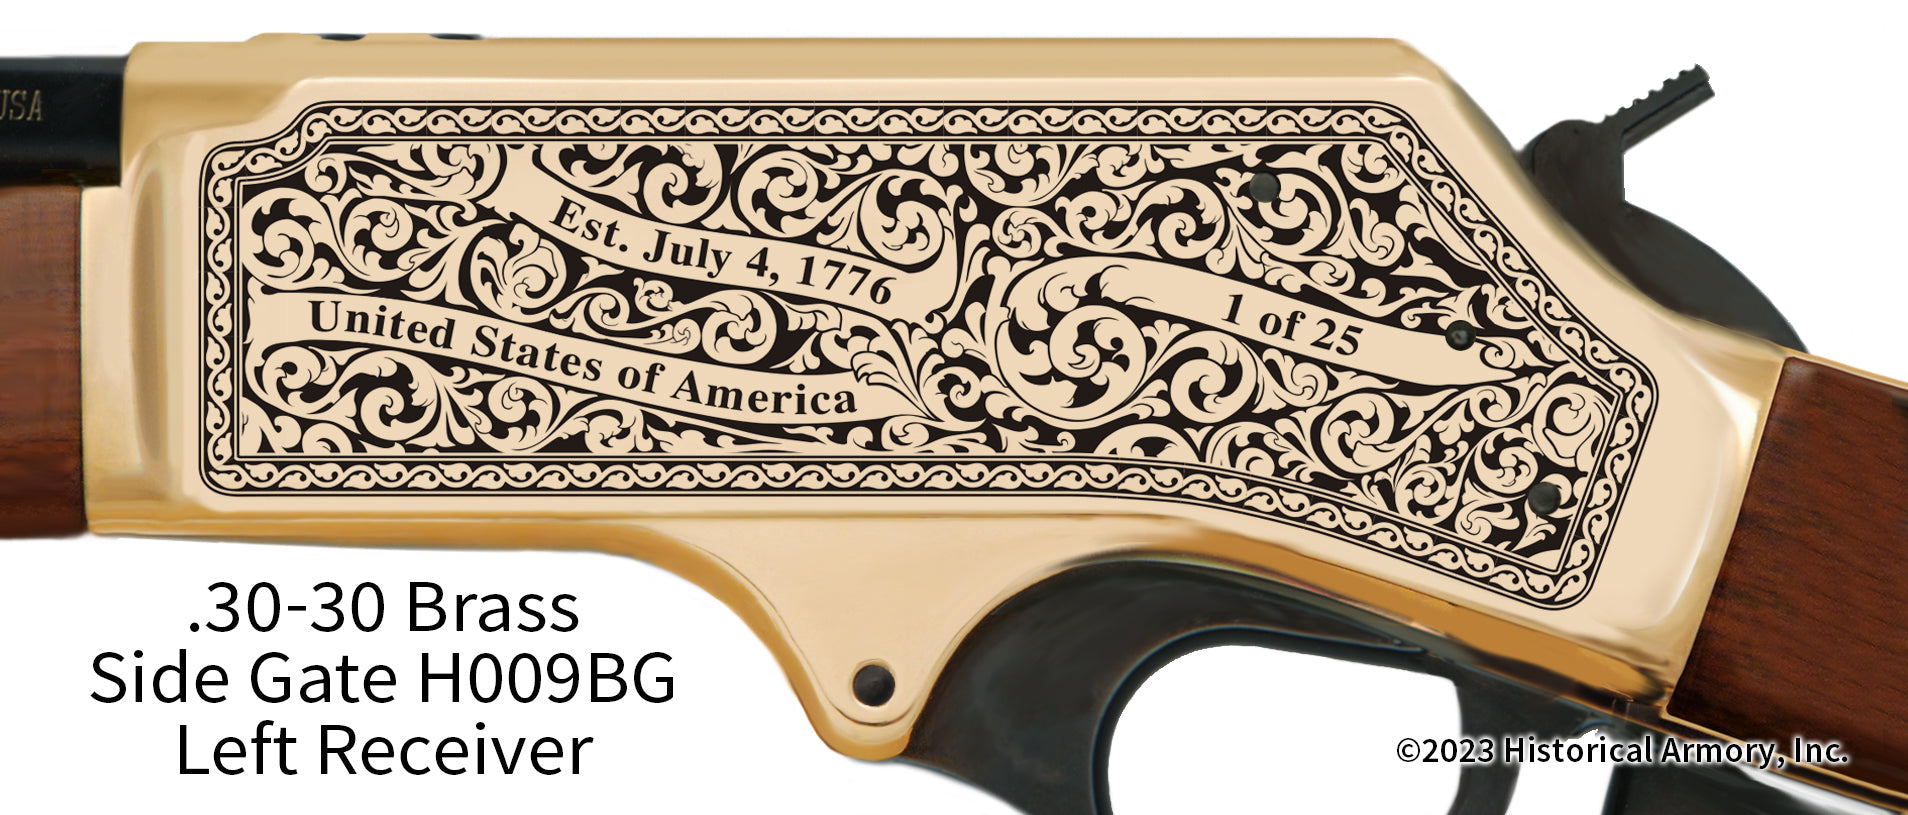 Greene County Arkansas Engraved Henry .30-30 Brass Side Gate Rifle